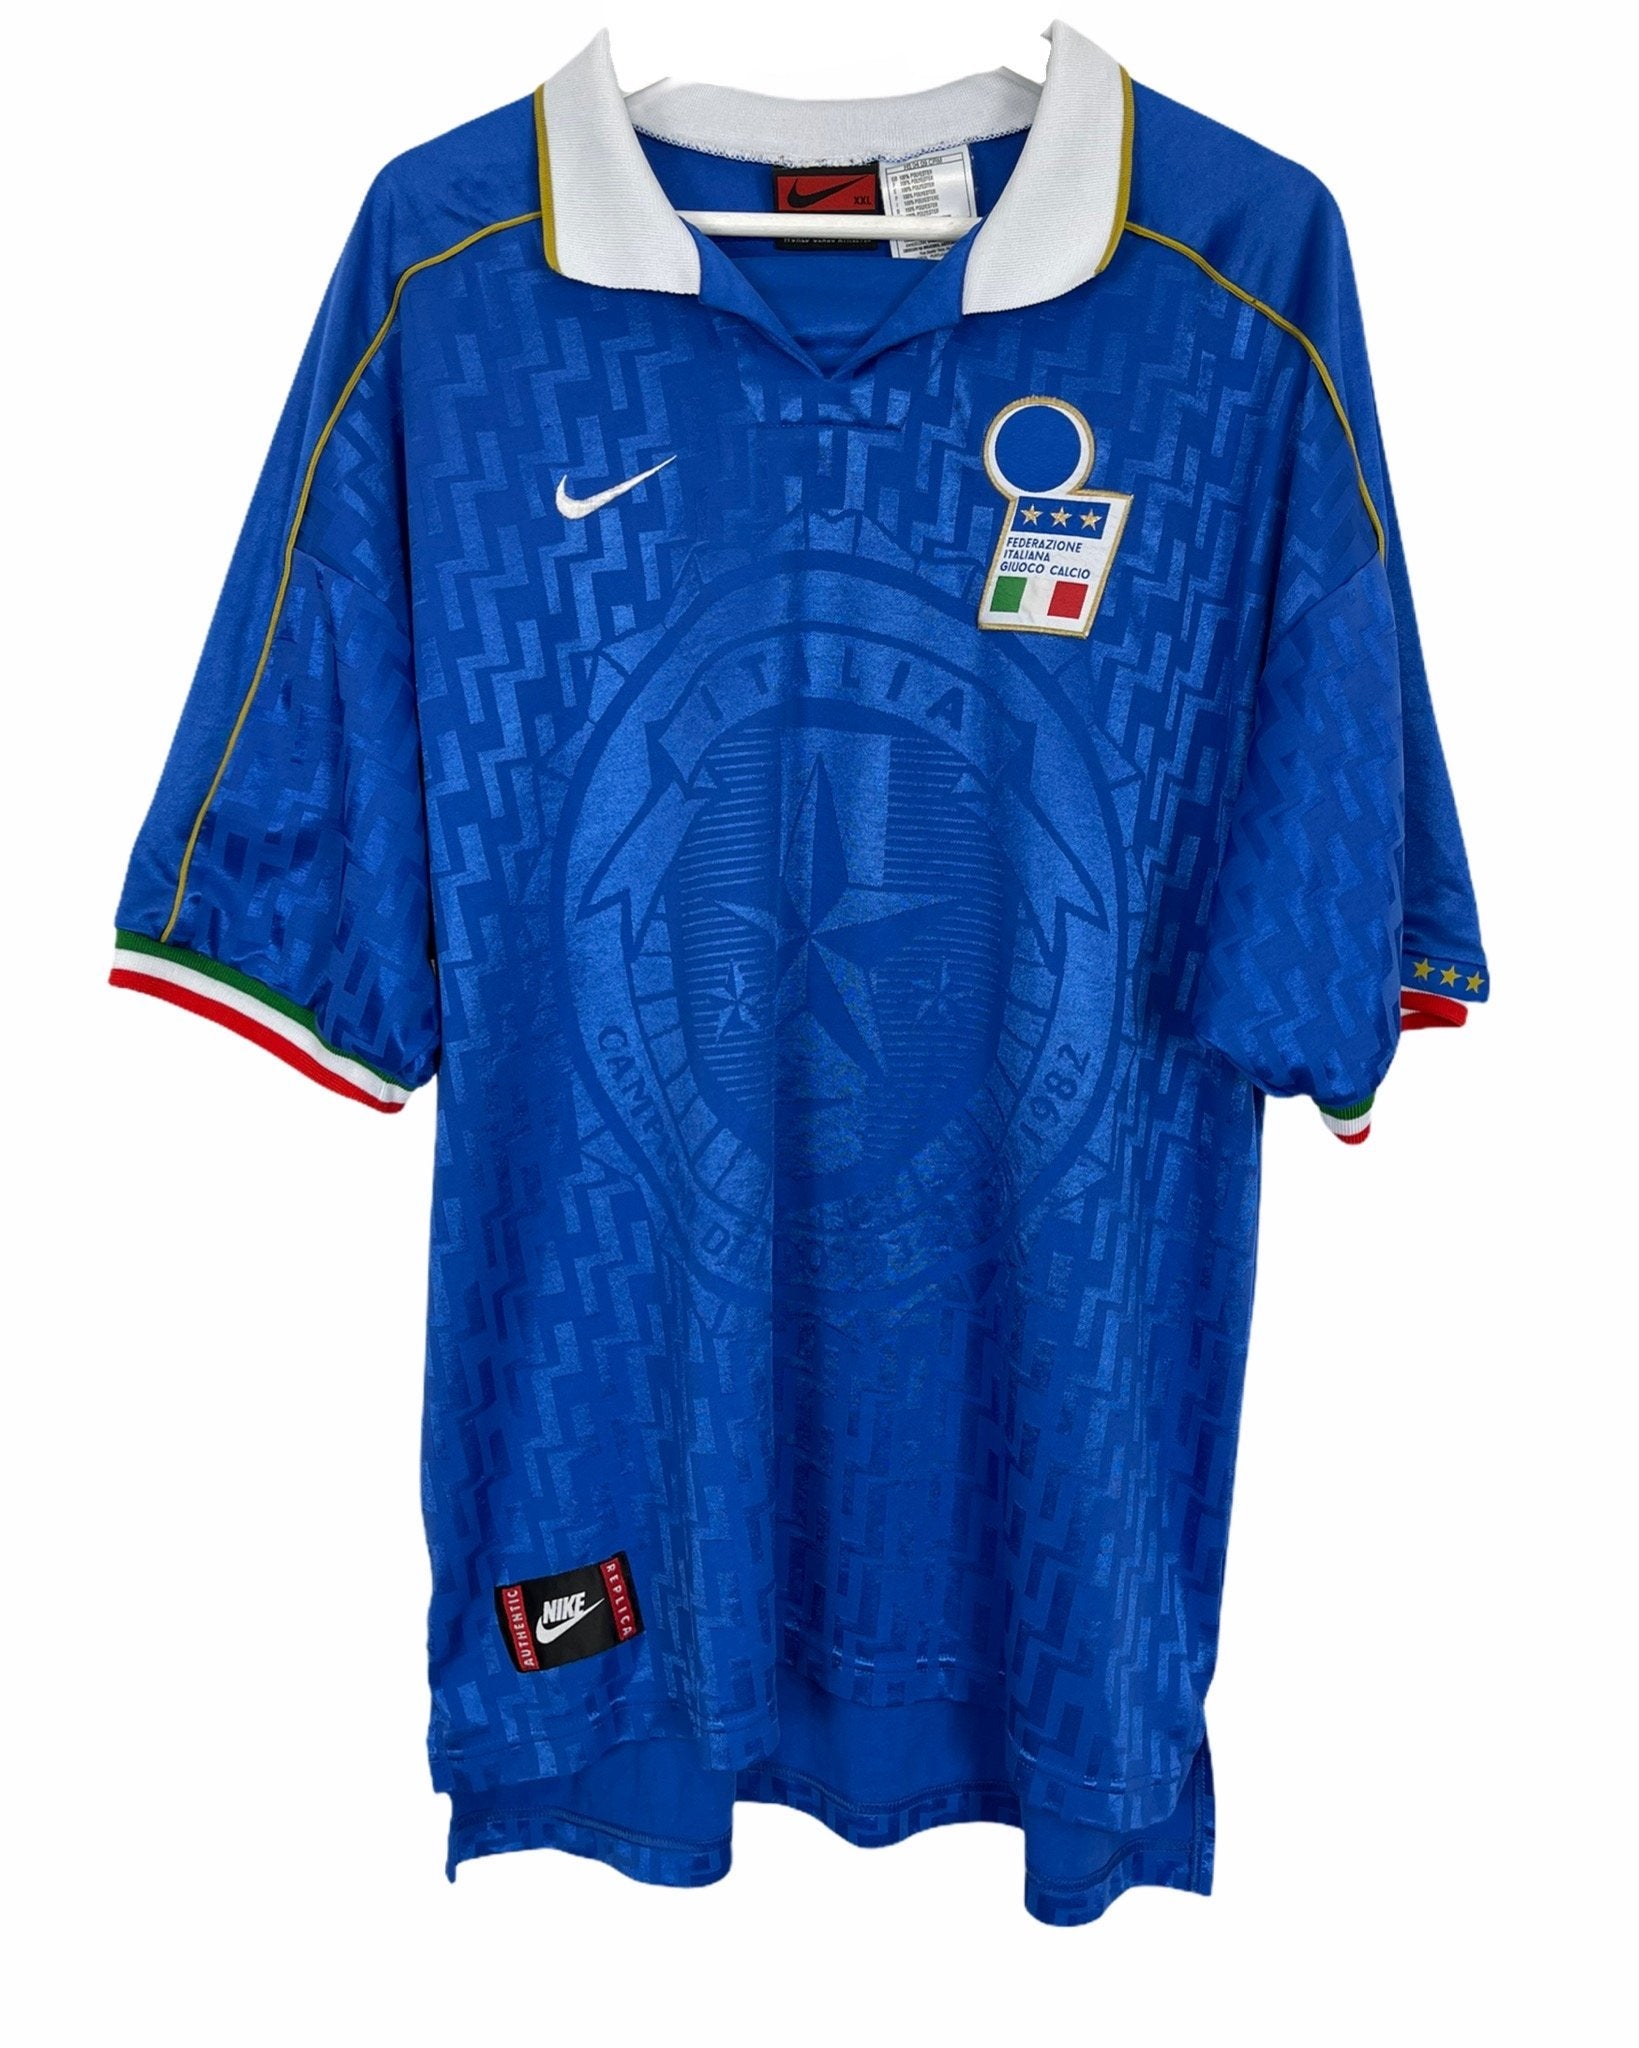  Maillot de football Nike Maillot de football - Italia 94' 96' - XXL - PLOMOSTORE